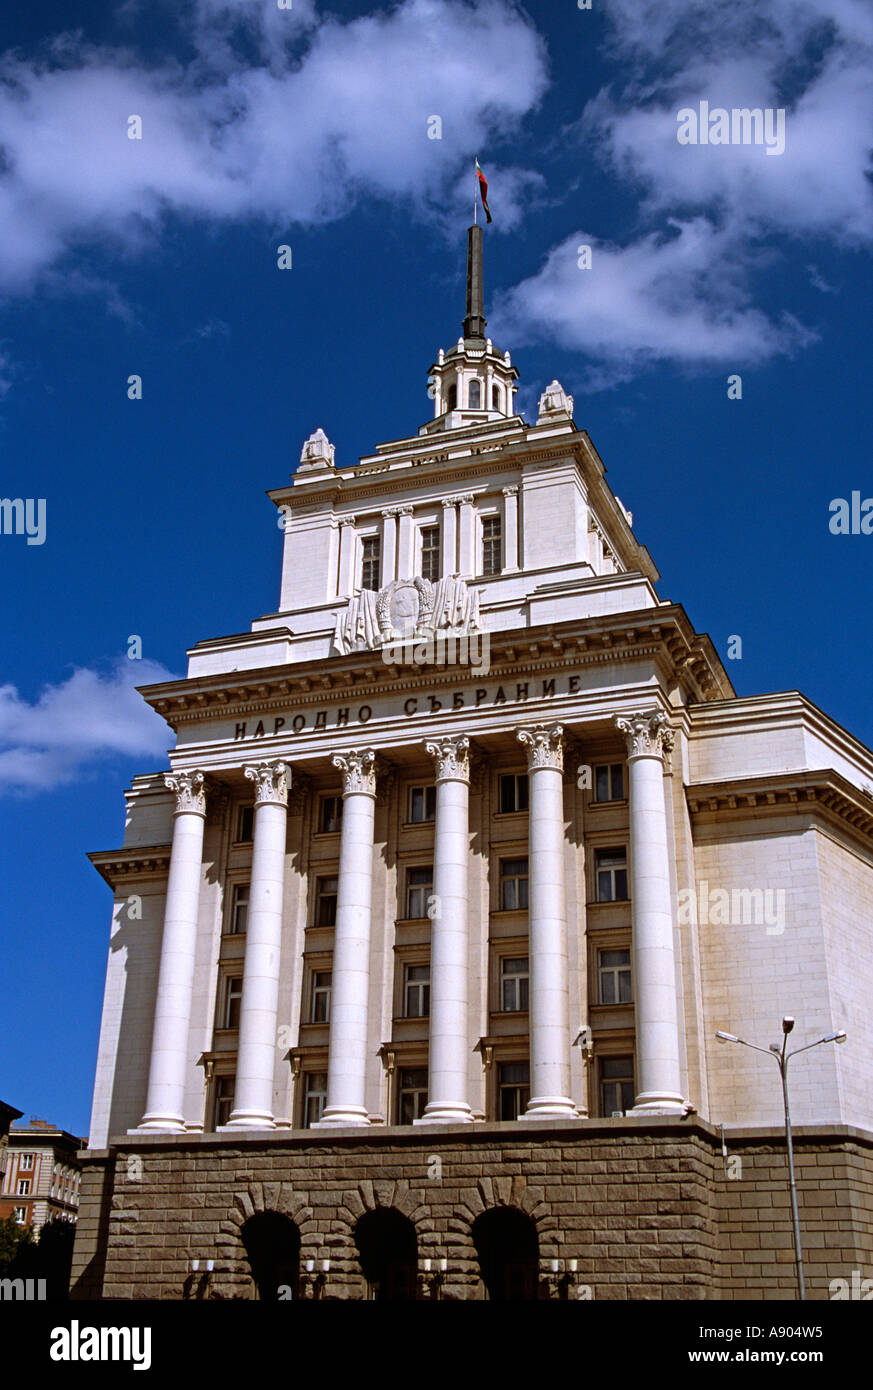 Ehemaligen kommunistischen Partei Hauptquartier, Hall in Sofia, Sofia, Bulgarien Stockfoto